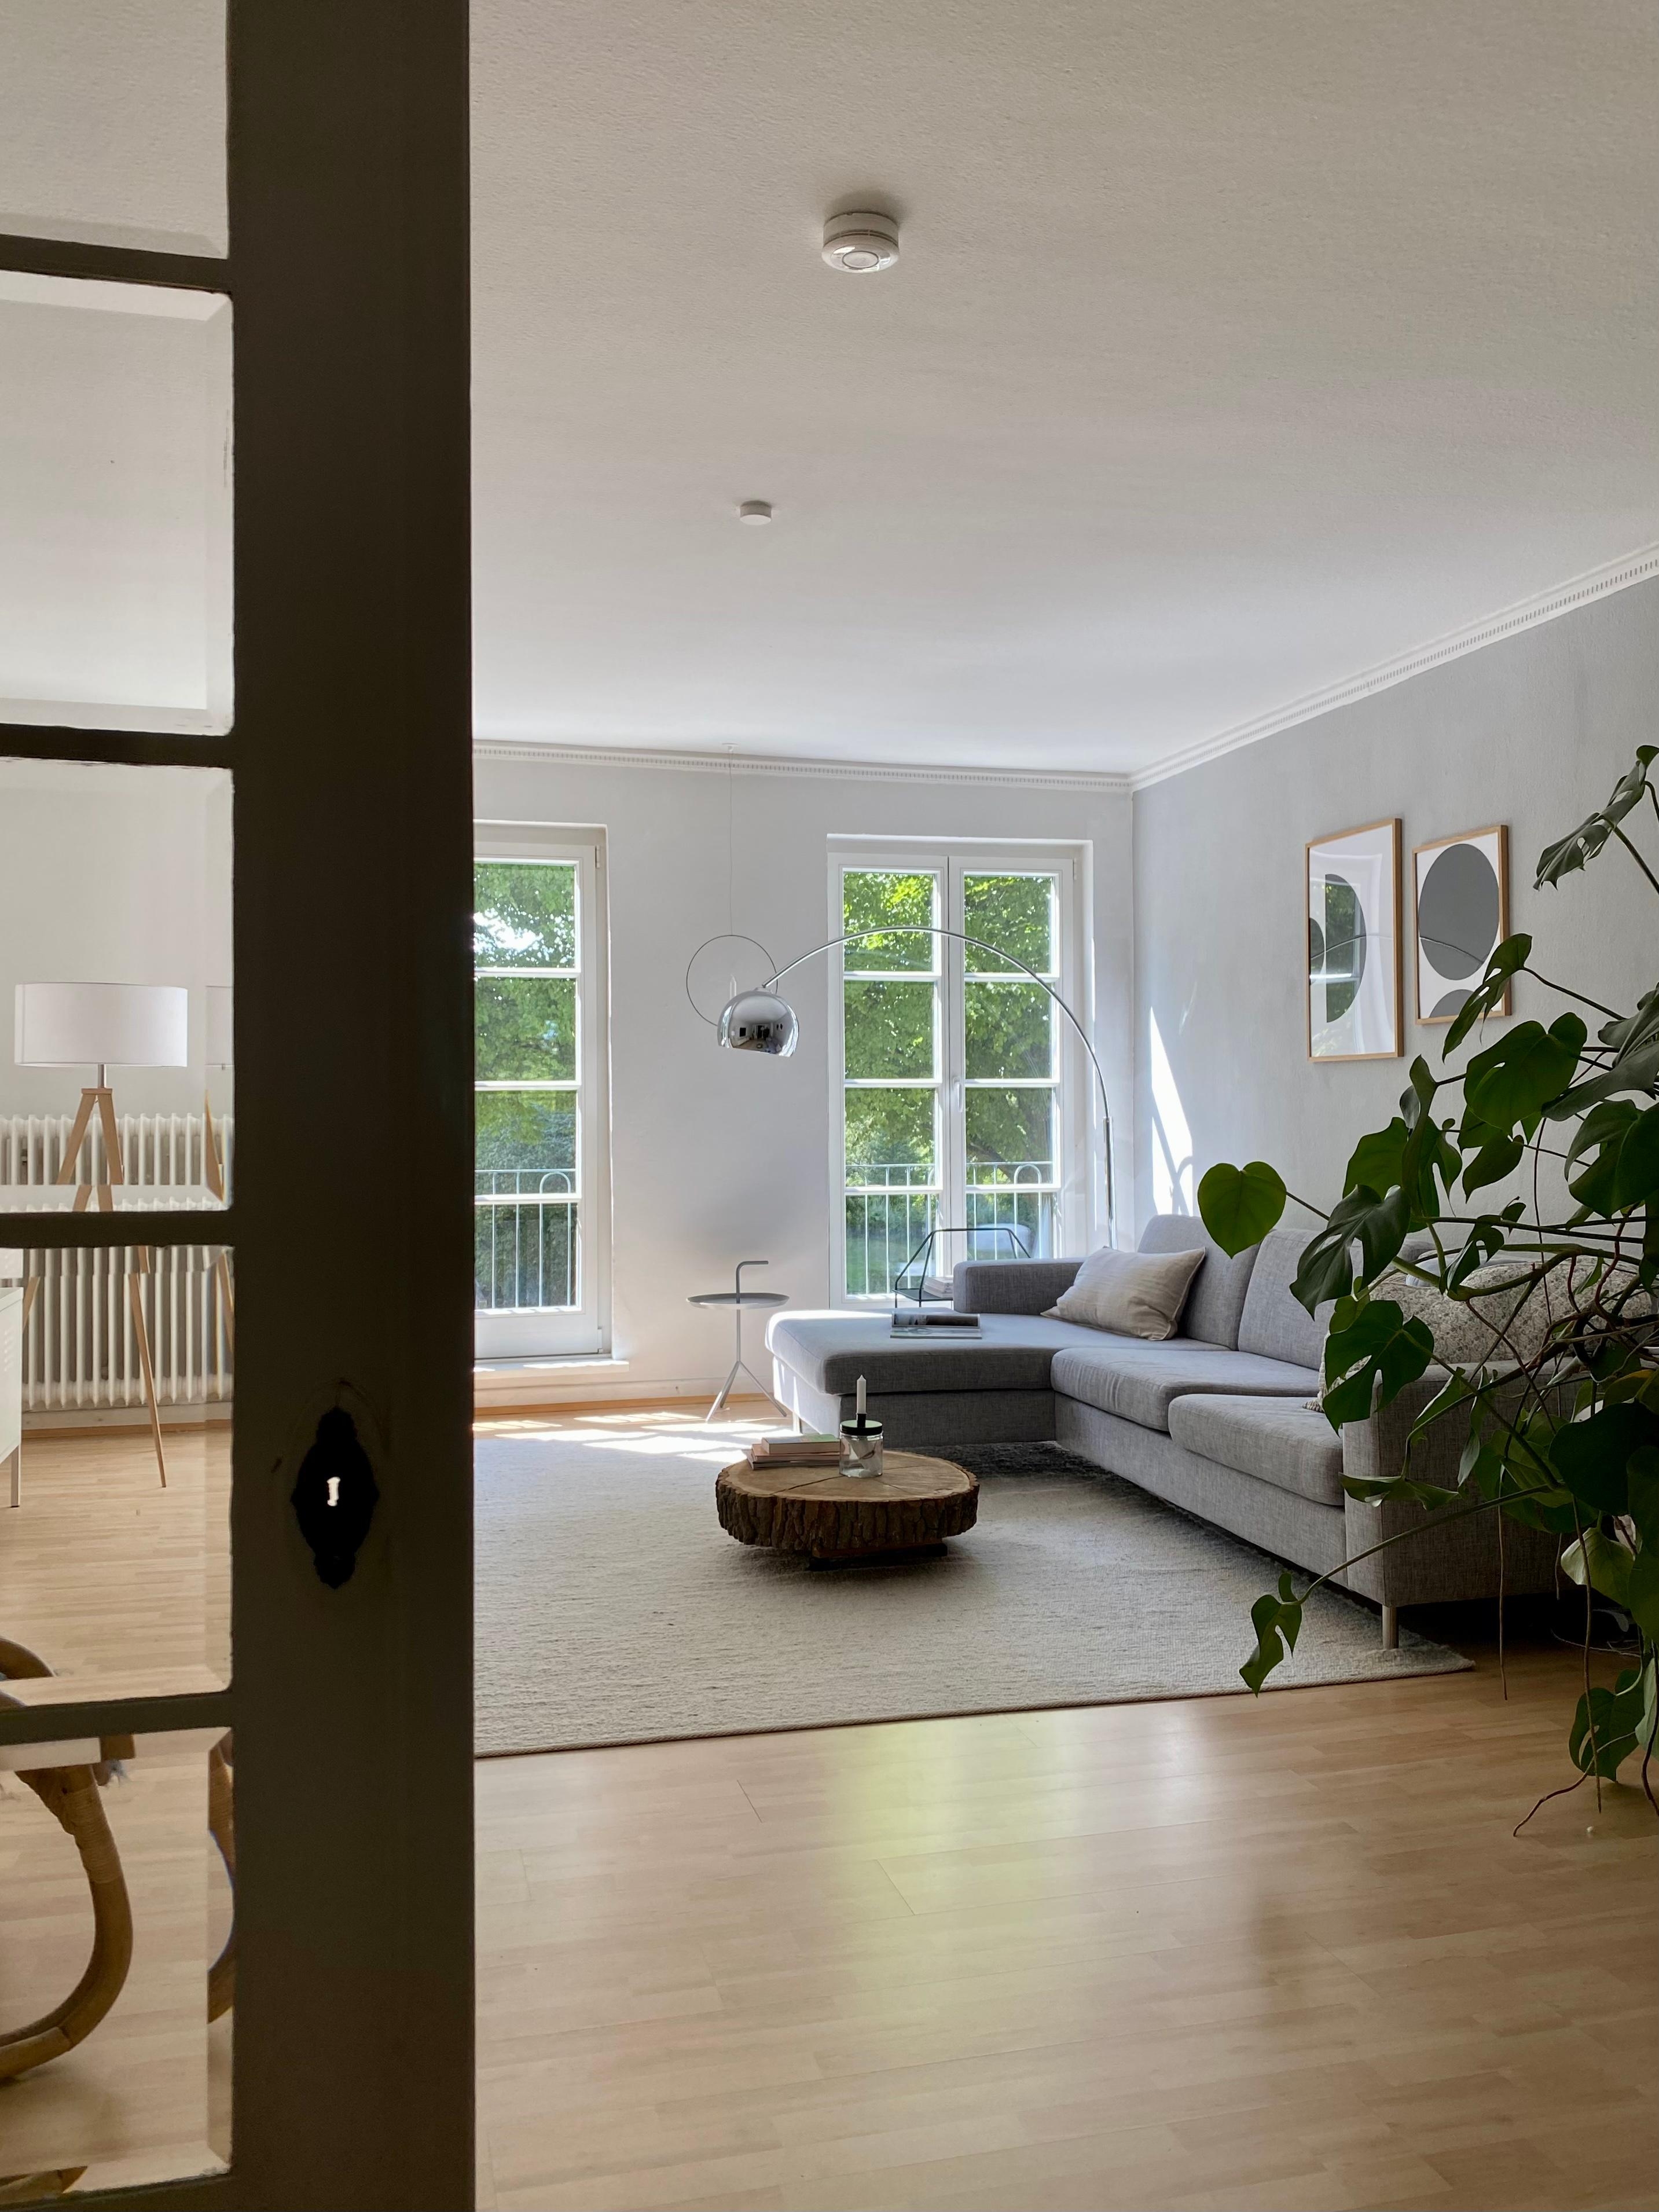 Liebe diesen Blick 😍
#livingroom #wohnzimmer #altbau #cosy 